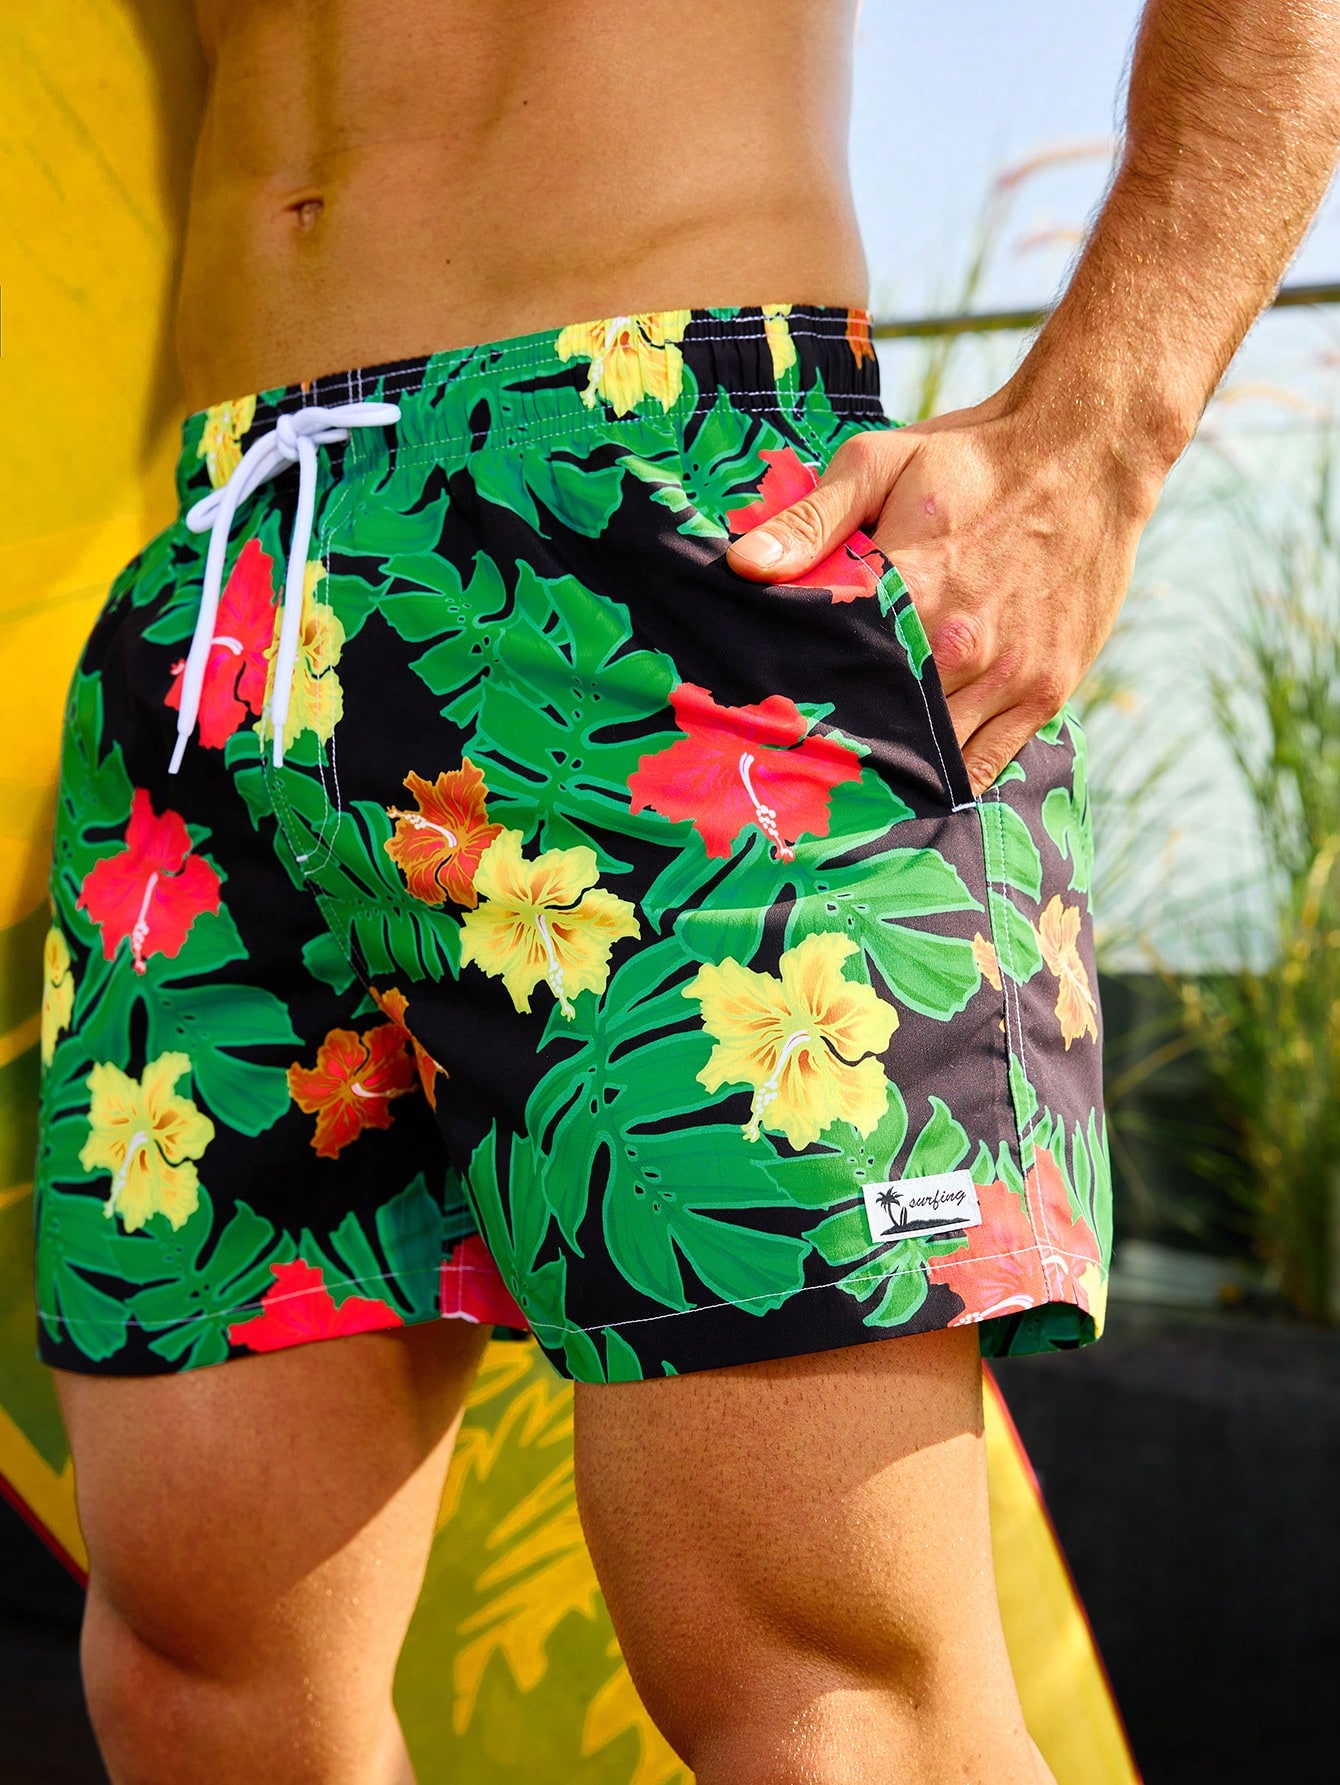 Мужские пляжные шорты с завязками на талии и принтом тропических растений, апельсин мужские пляжные шорты мужская одежда для плавания шорты для плавания пляжные шорты для доски штаны для плавания костюмы для плавания сп